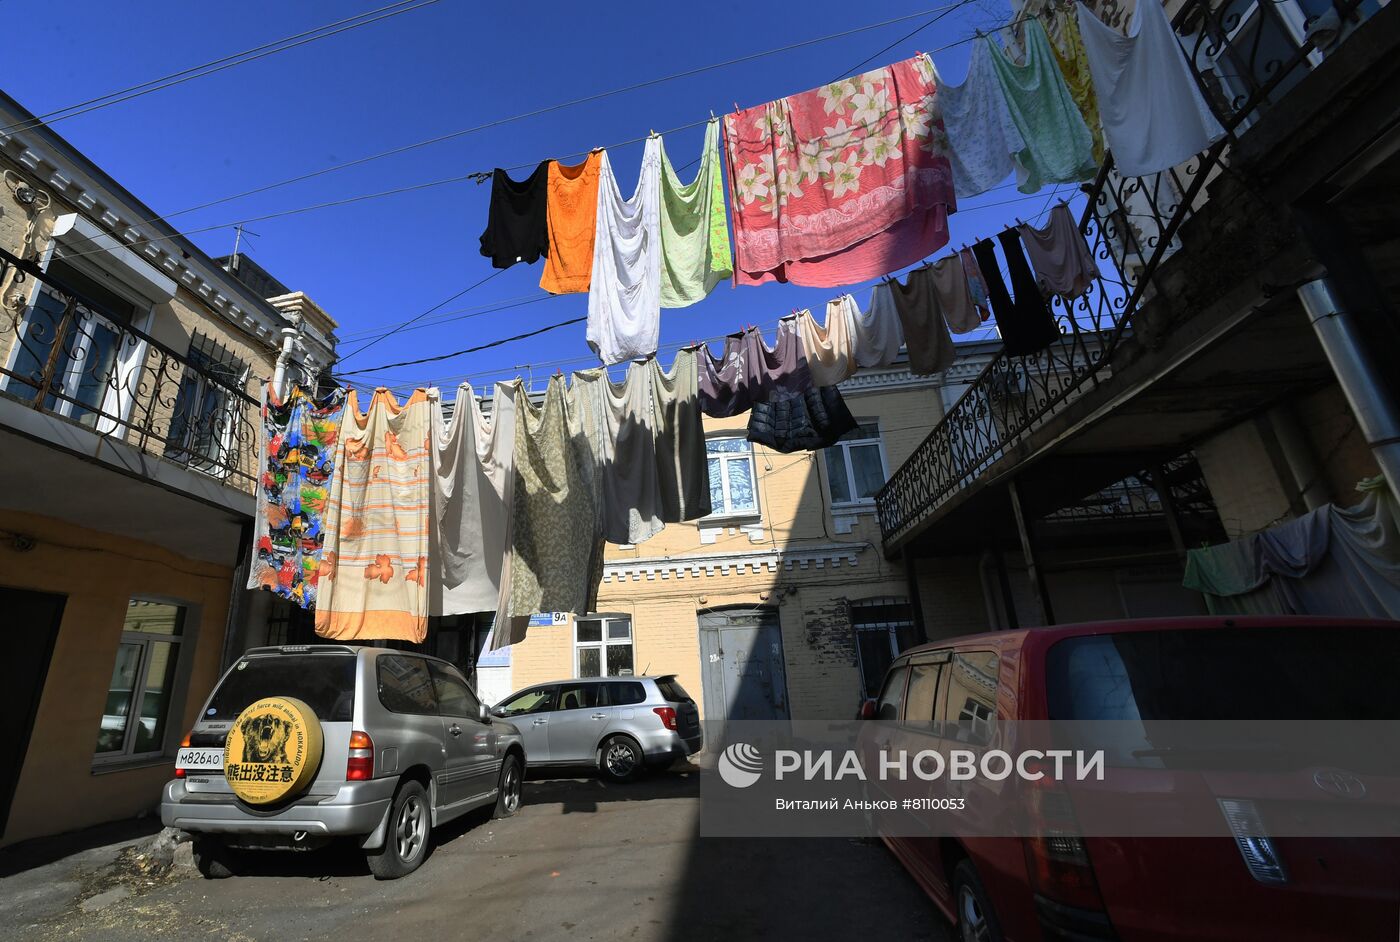 Старые кварталы в центре Владивостока 